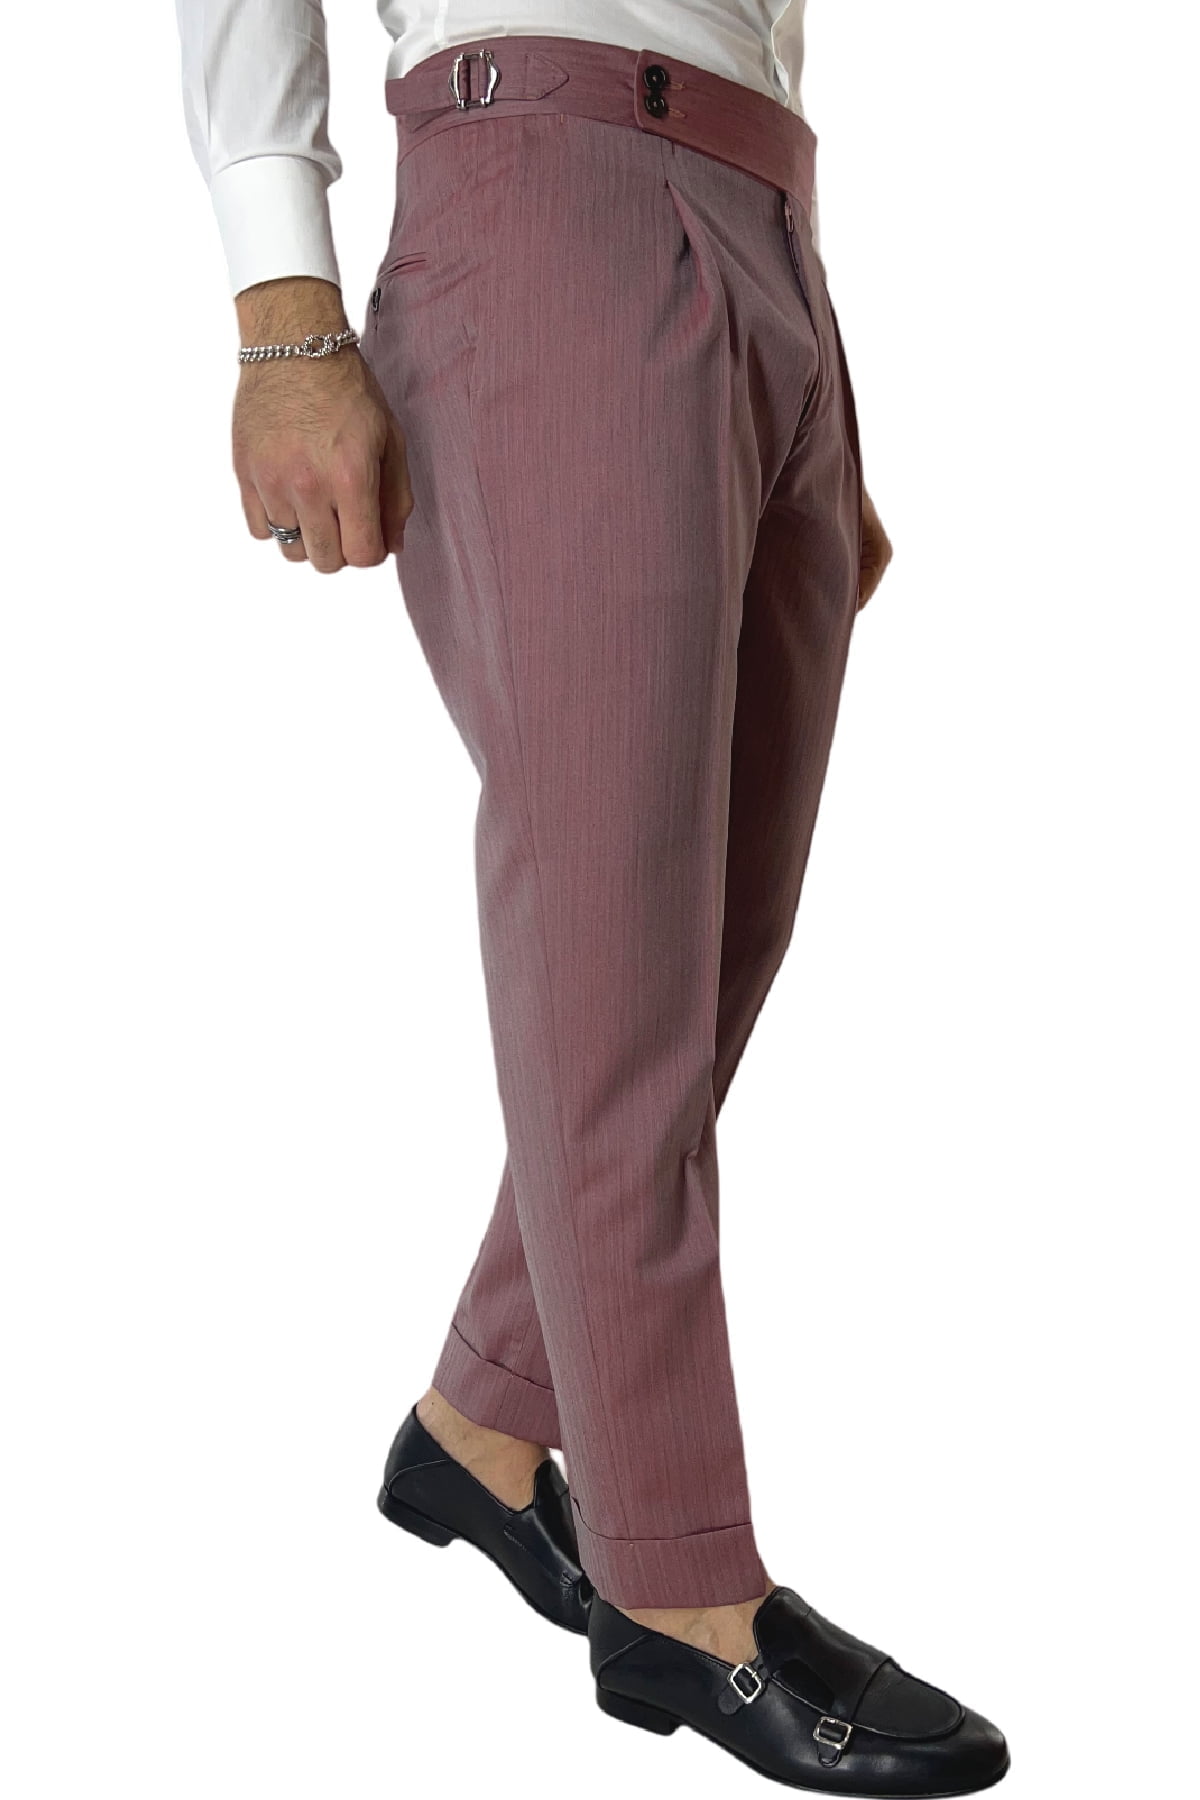 Pantalone uomo Bordeaux Solaro in fresco lana e seta Holland & Sherry vita alta con pinces fibbie laterali e risvolto 4cm